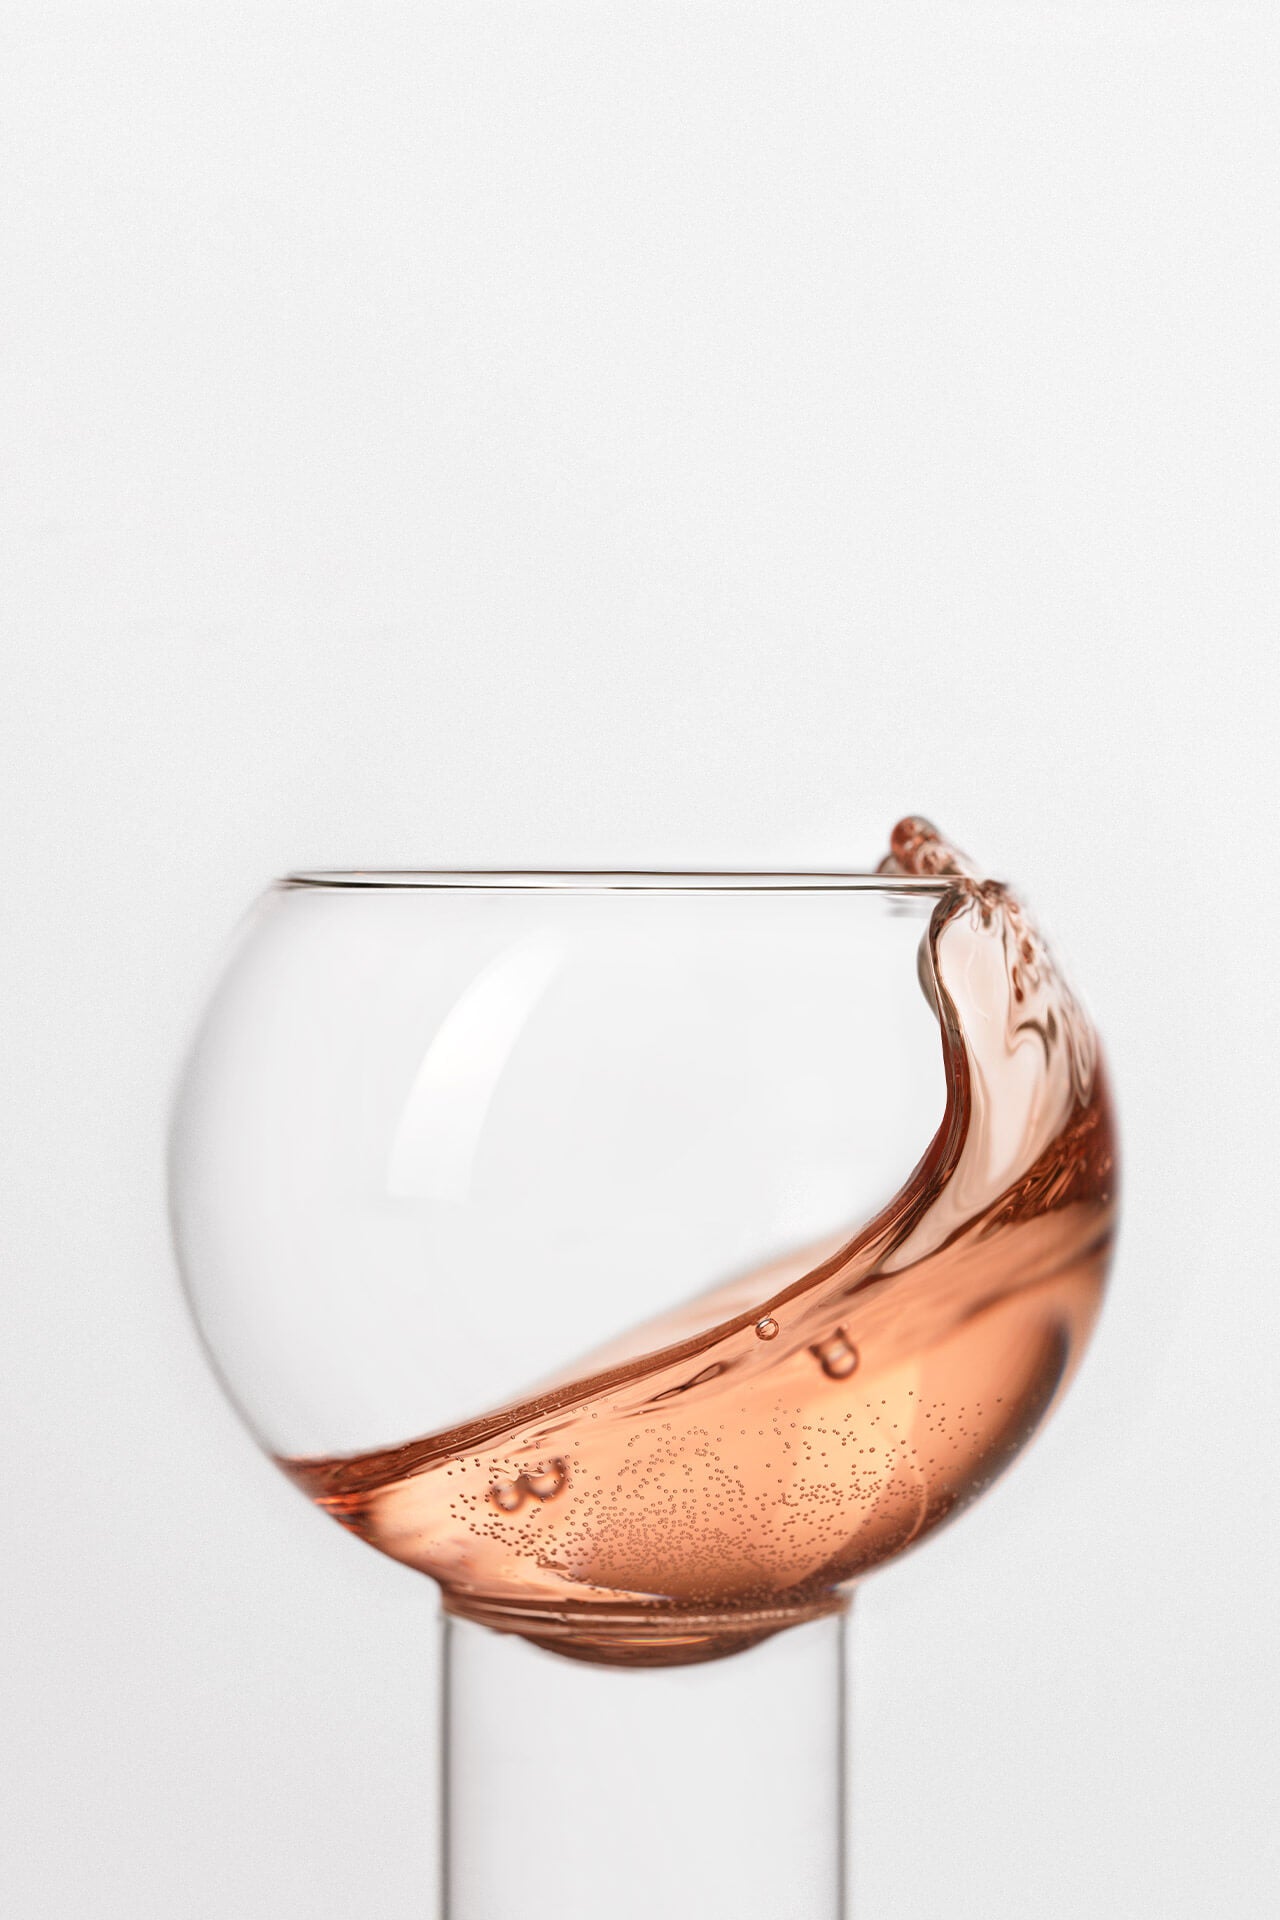 Provence - Rosé Wine